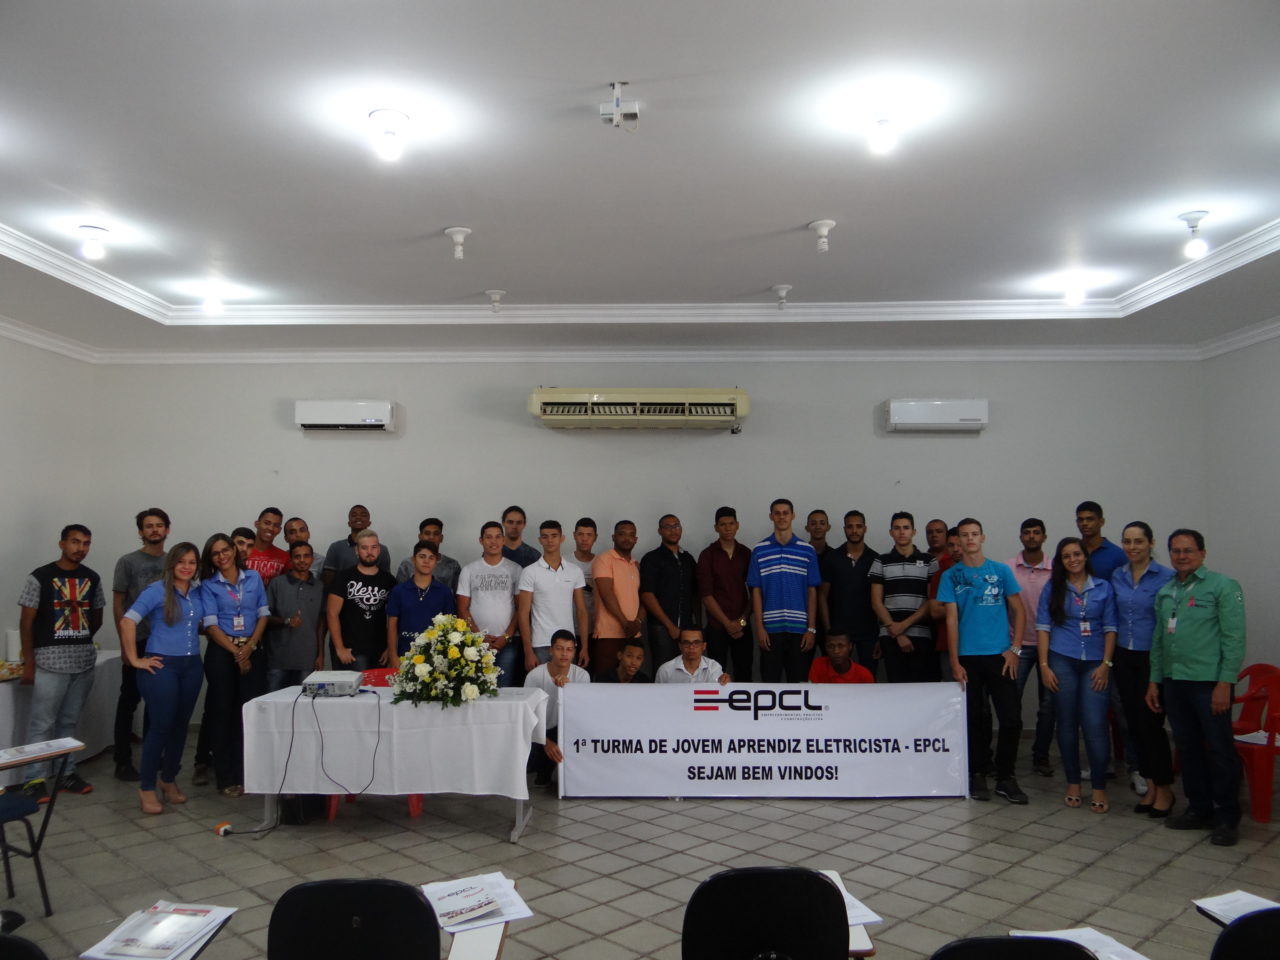 EPCL – Empreendimentos, Projetos e Construções Ltda inicia em Brumado, em parceria com o SENAI, primeira turma de Jovem Aprendiz Eletricista de Rede de Distribuição.